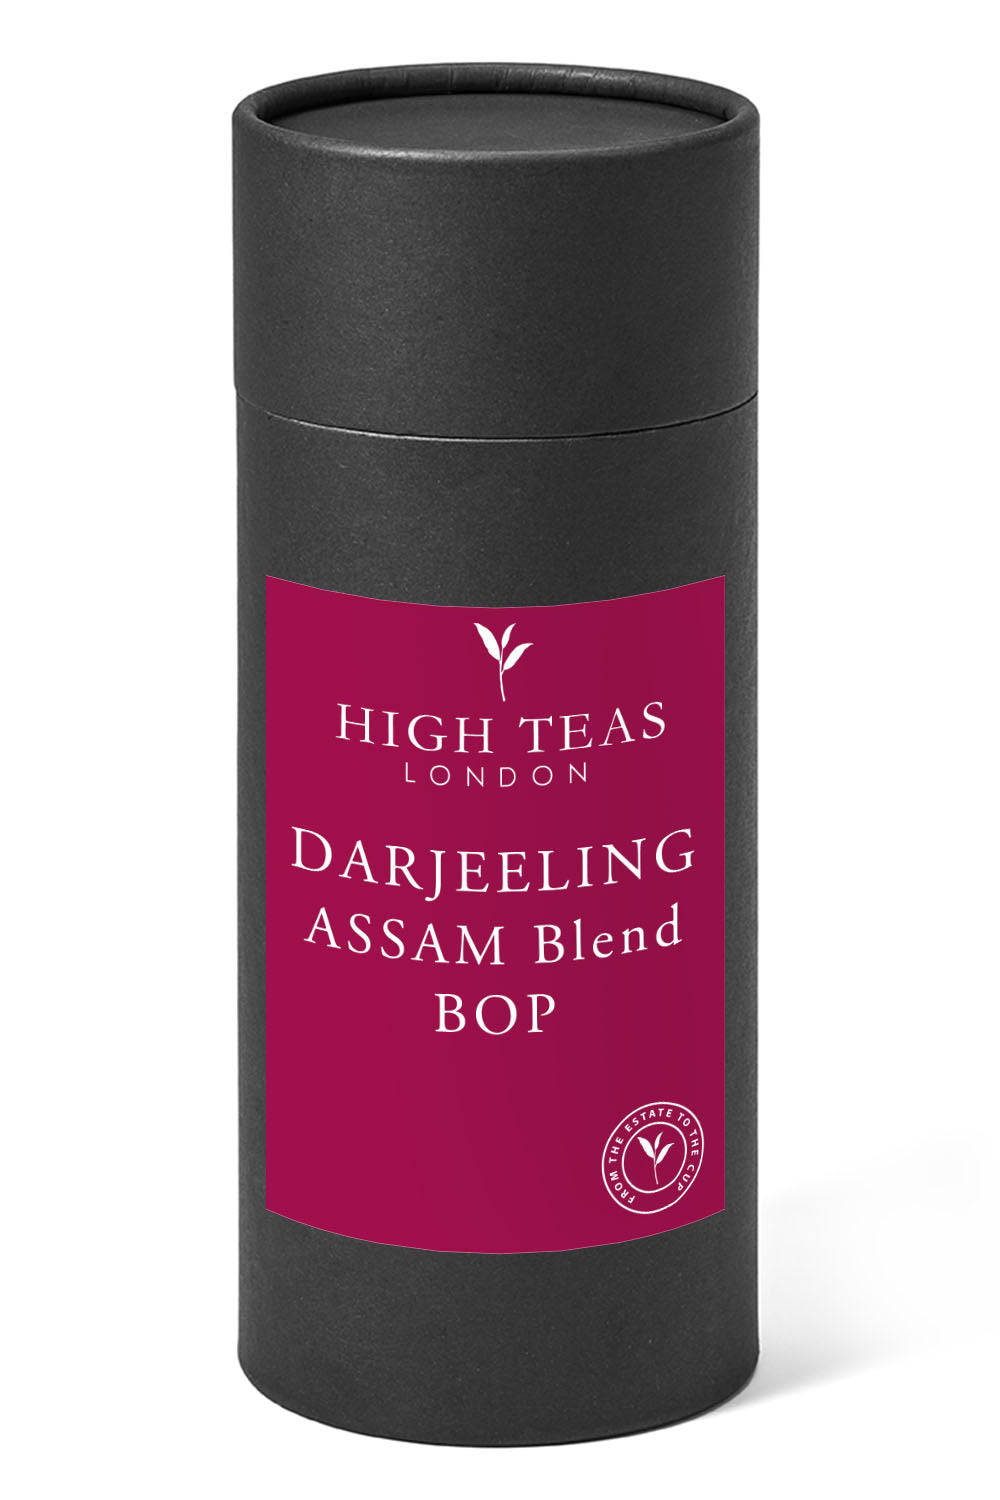 Darjeeling/Assam Blend BOP - Our Brunch Tea-150g gift-Loose Leaf Tea-High Teas